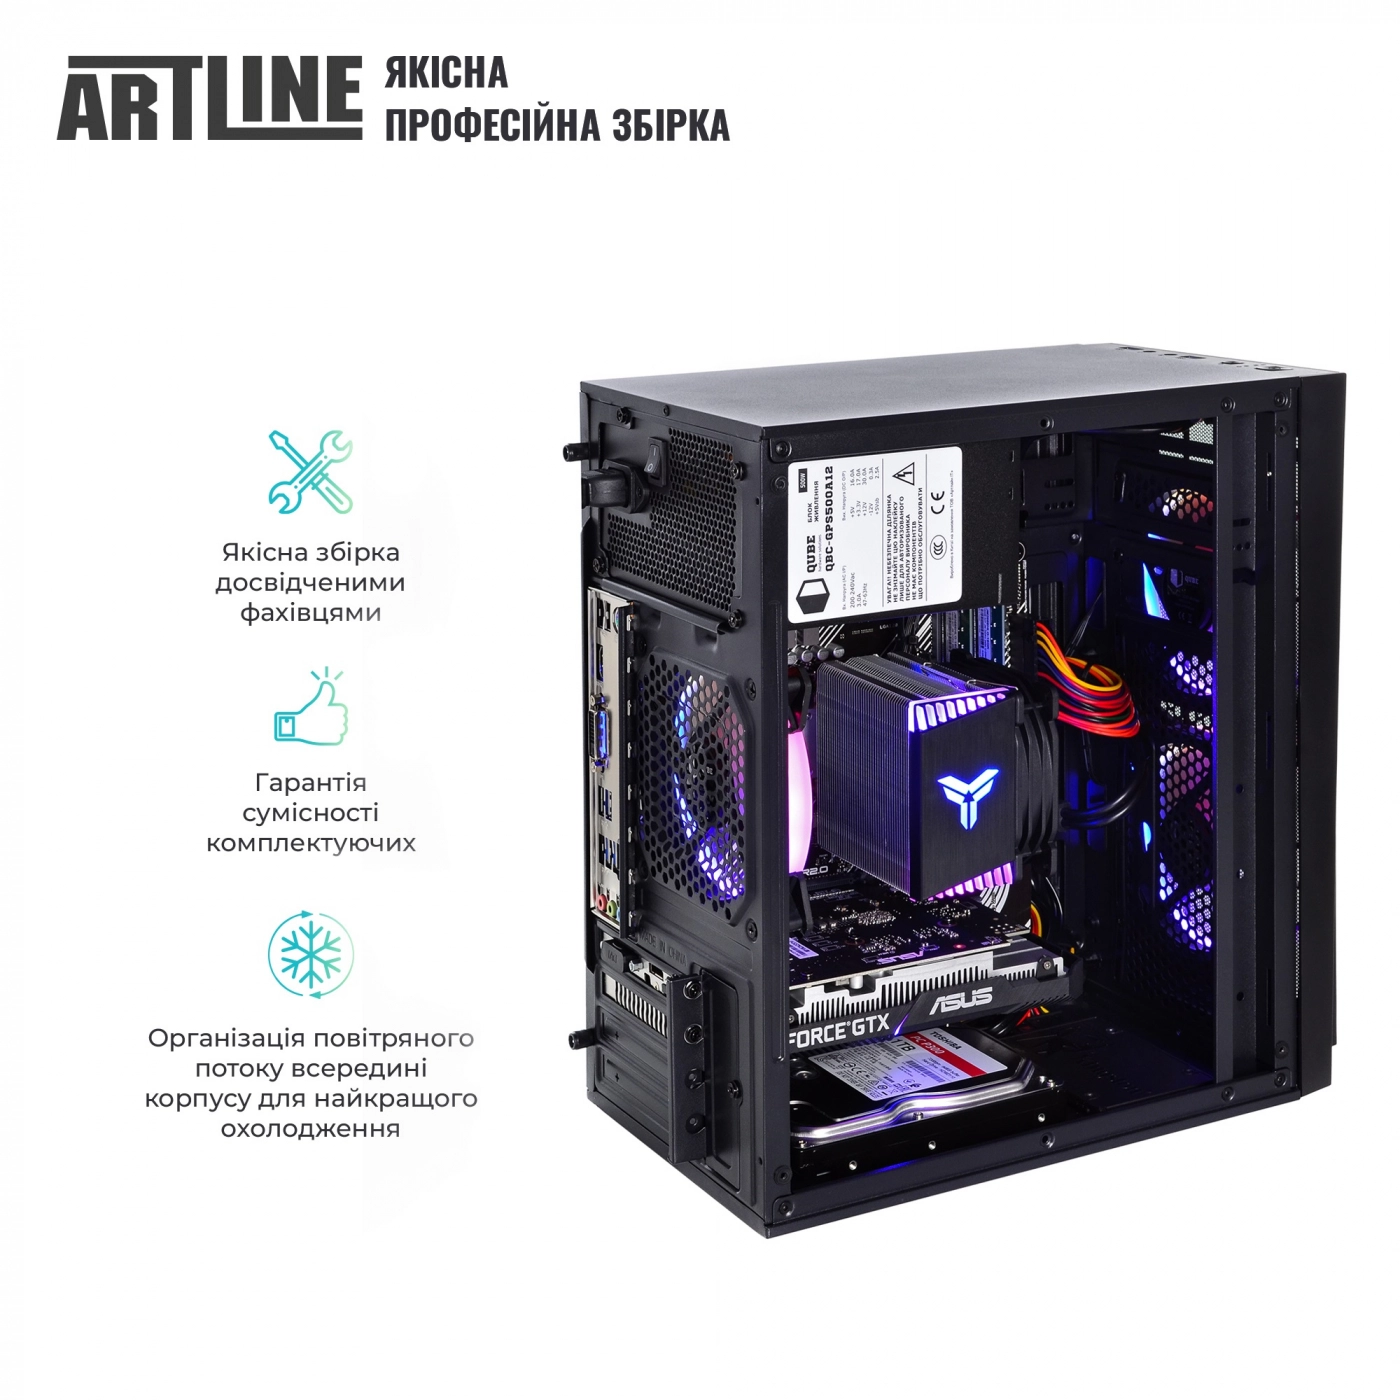 Купить Компьютер ARTLINE Gaming X43v28 - фото 5